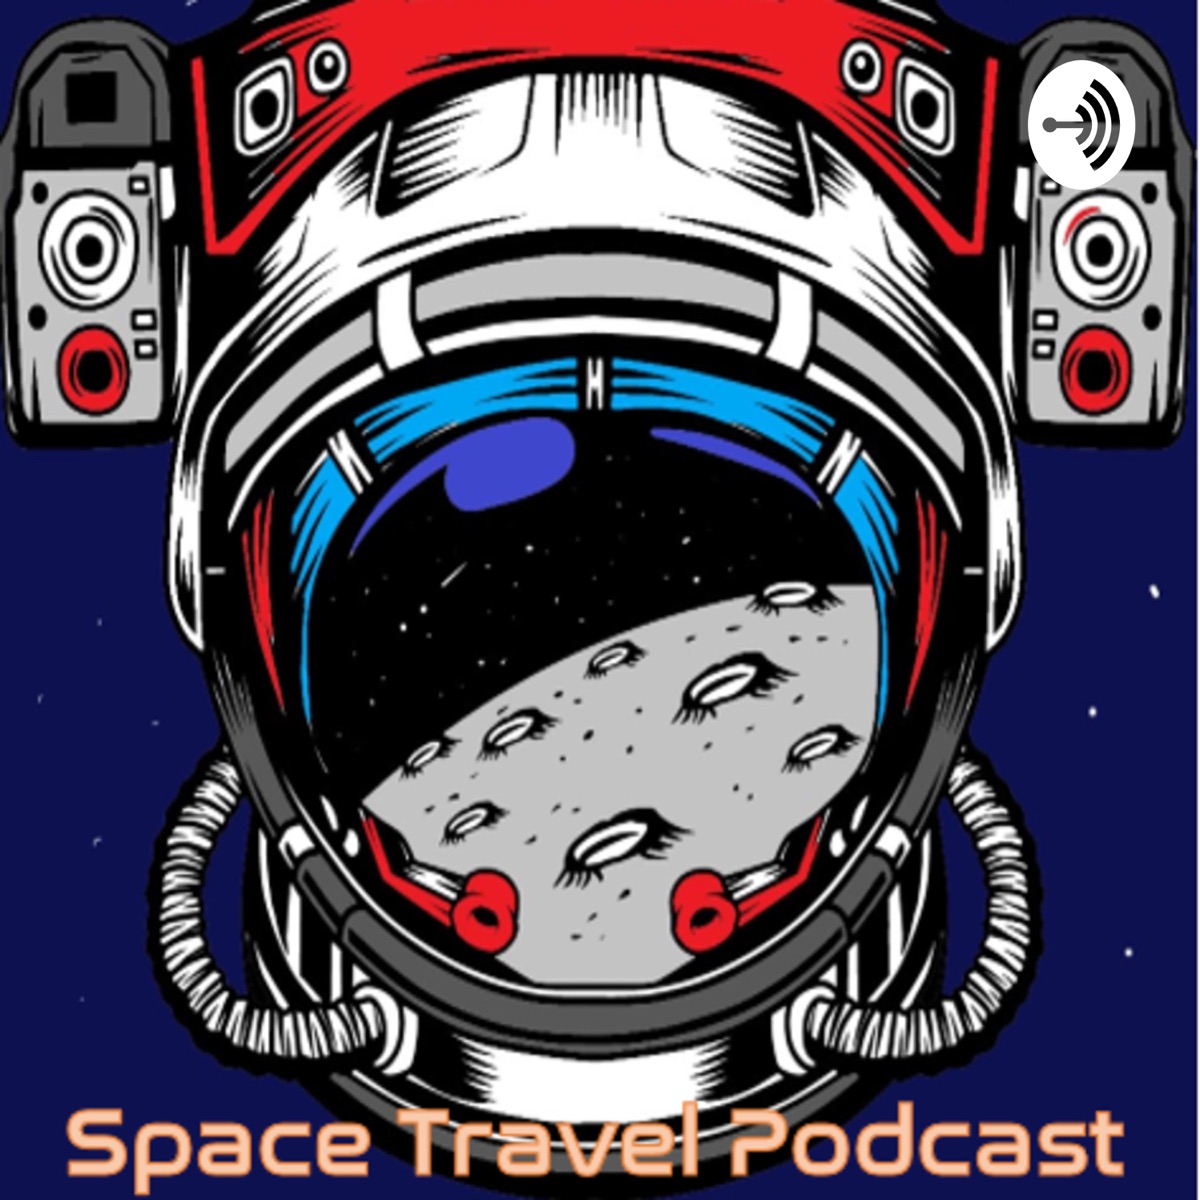 Podcast về du lịch vũ trụ - một trải nghiệm tuyệt vời để khám phá những ngóc ngách của Vũ trụ và những cơ hội tuyệt vời để đi du lịch. Hãy lắng nghe podcast và tìm hiểu thêm về những thứ tuyệt vời đang chờ đón.